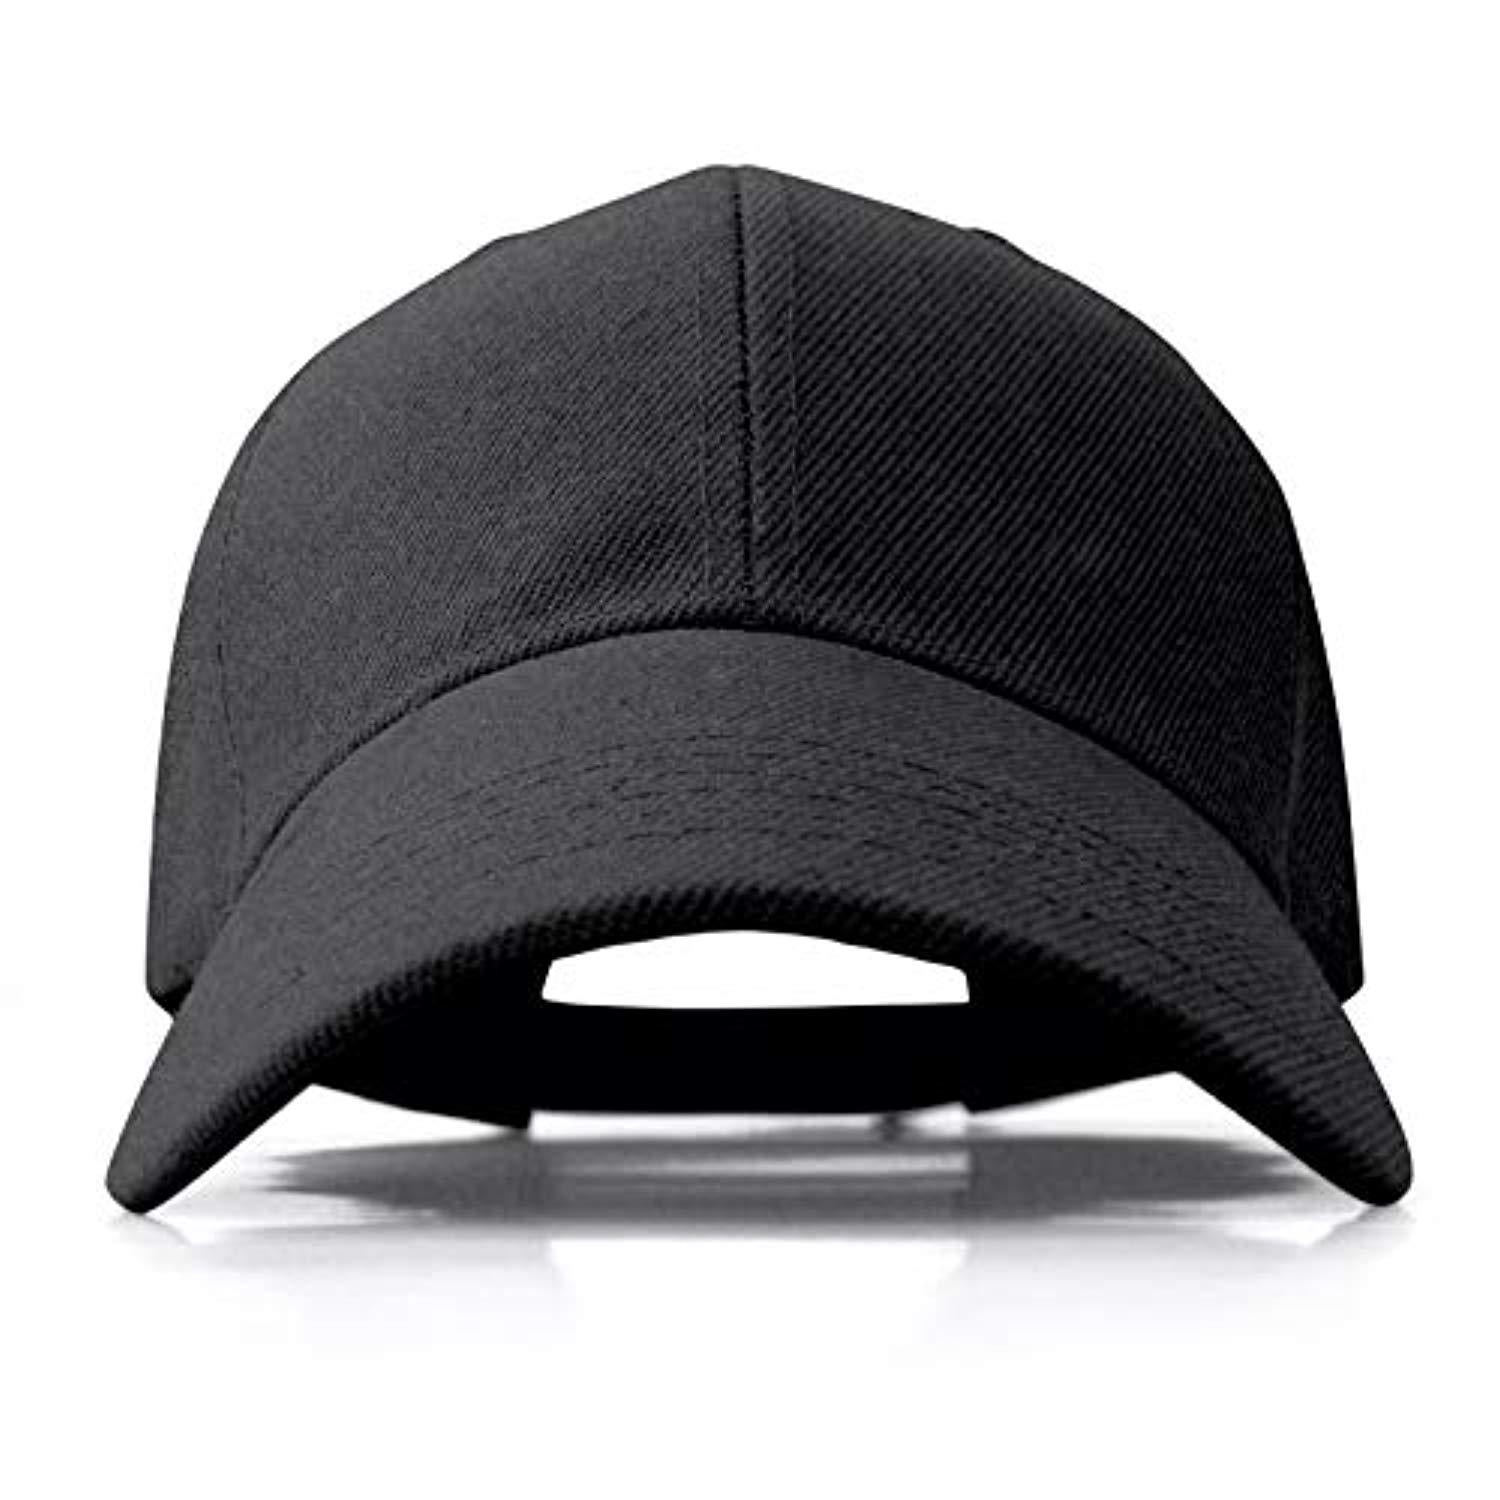 plain black baseball cap womens